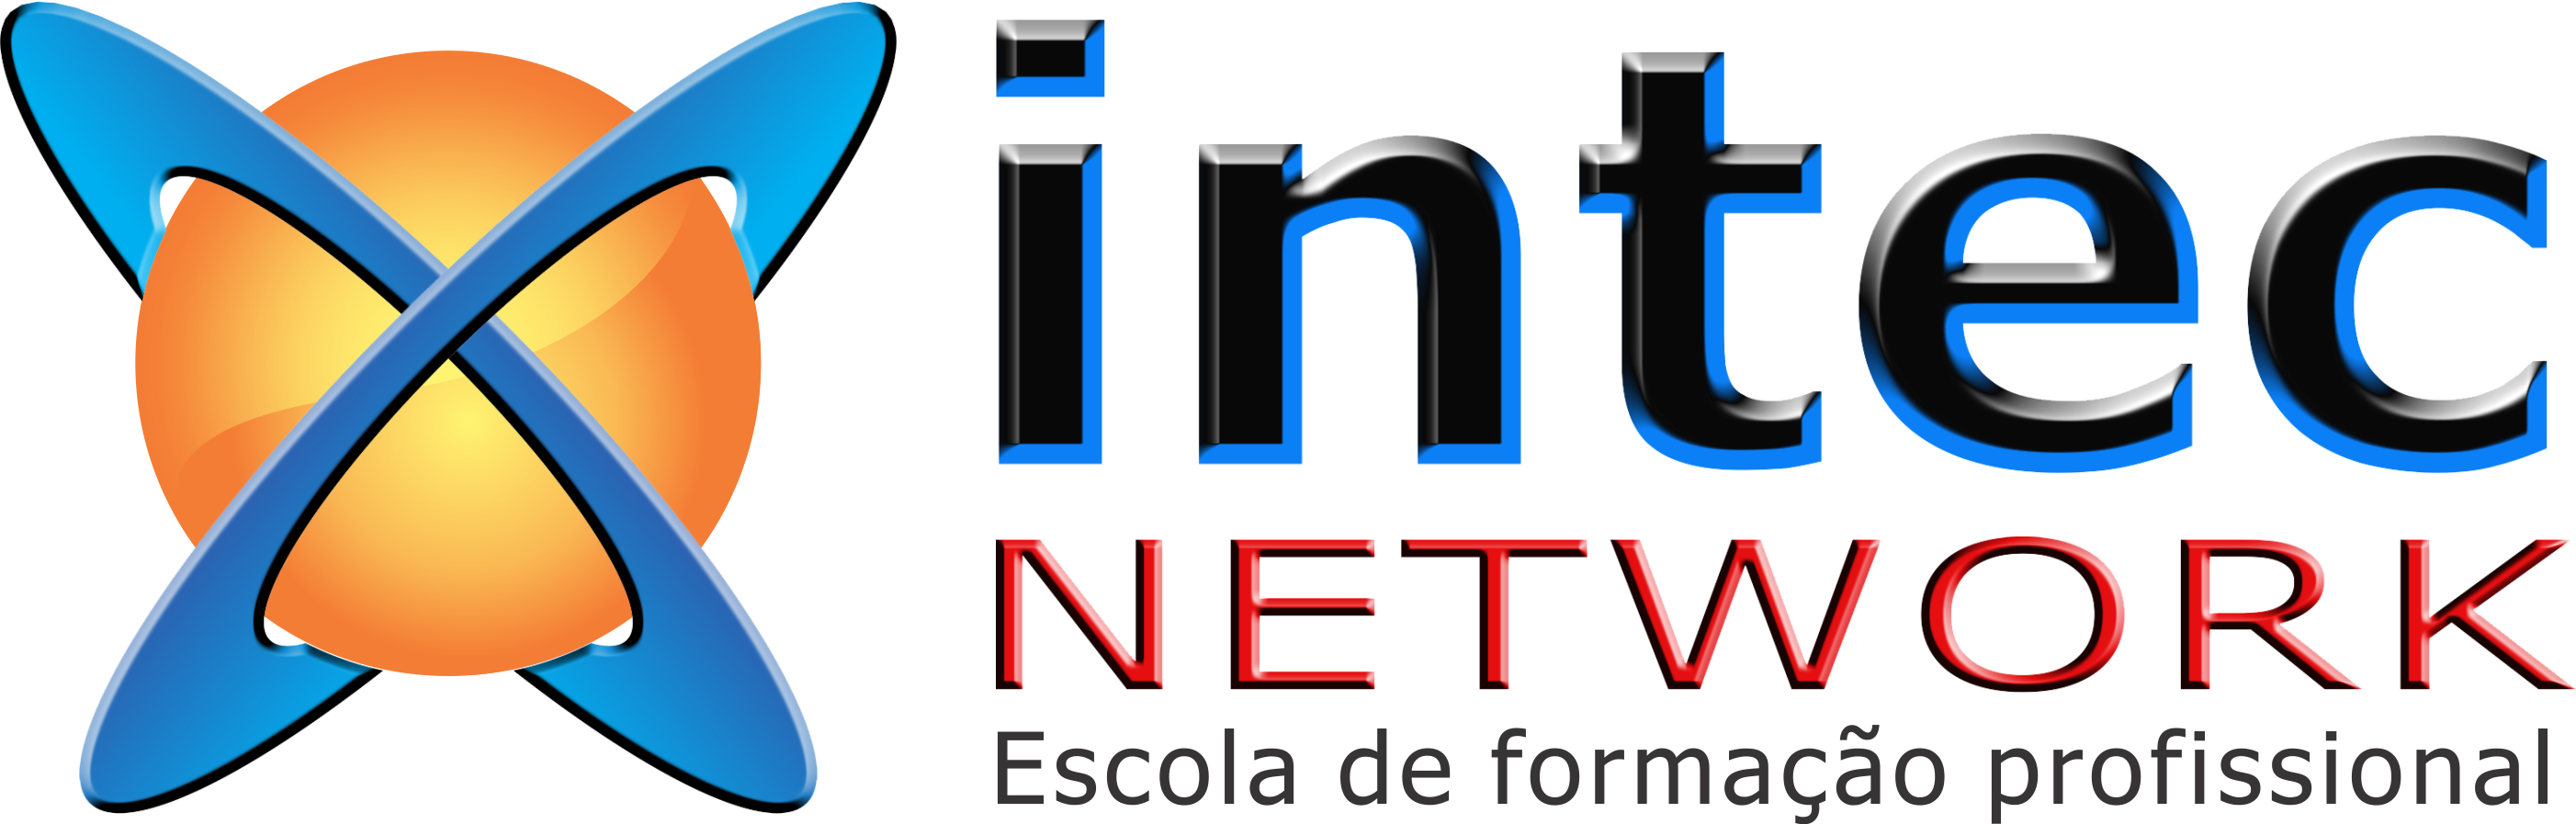 Intec Network